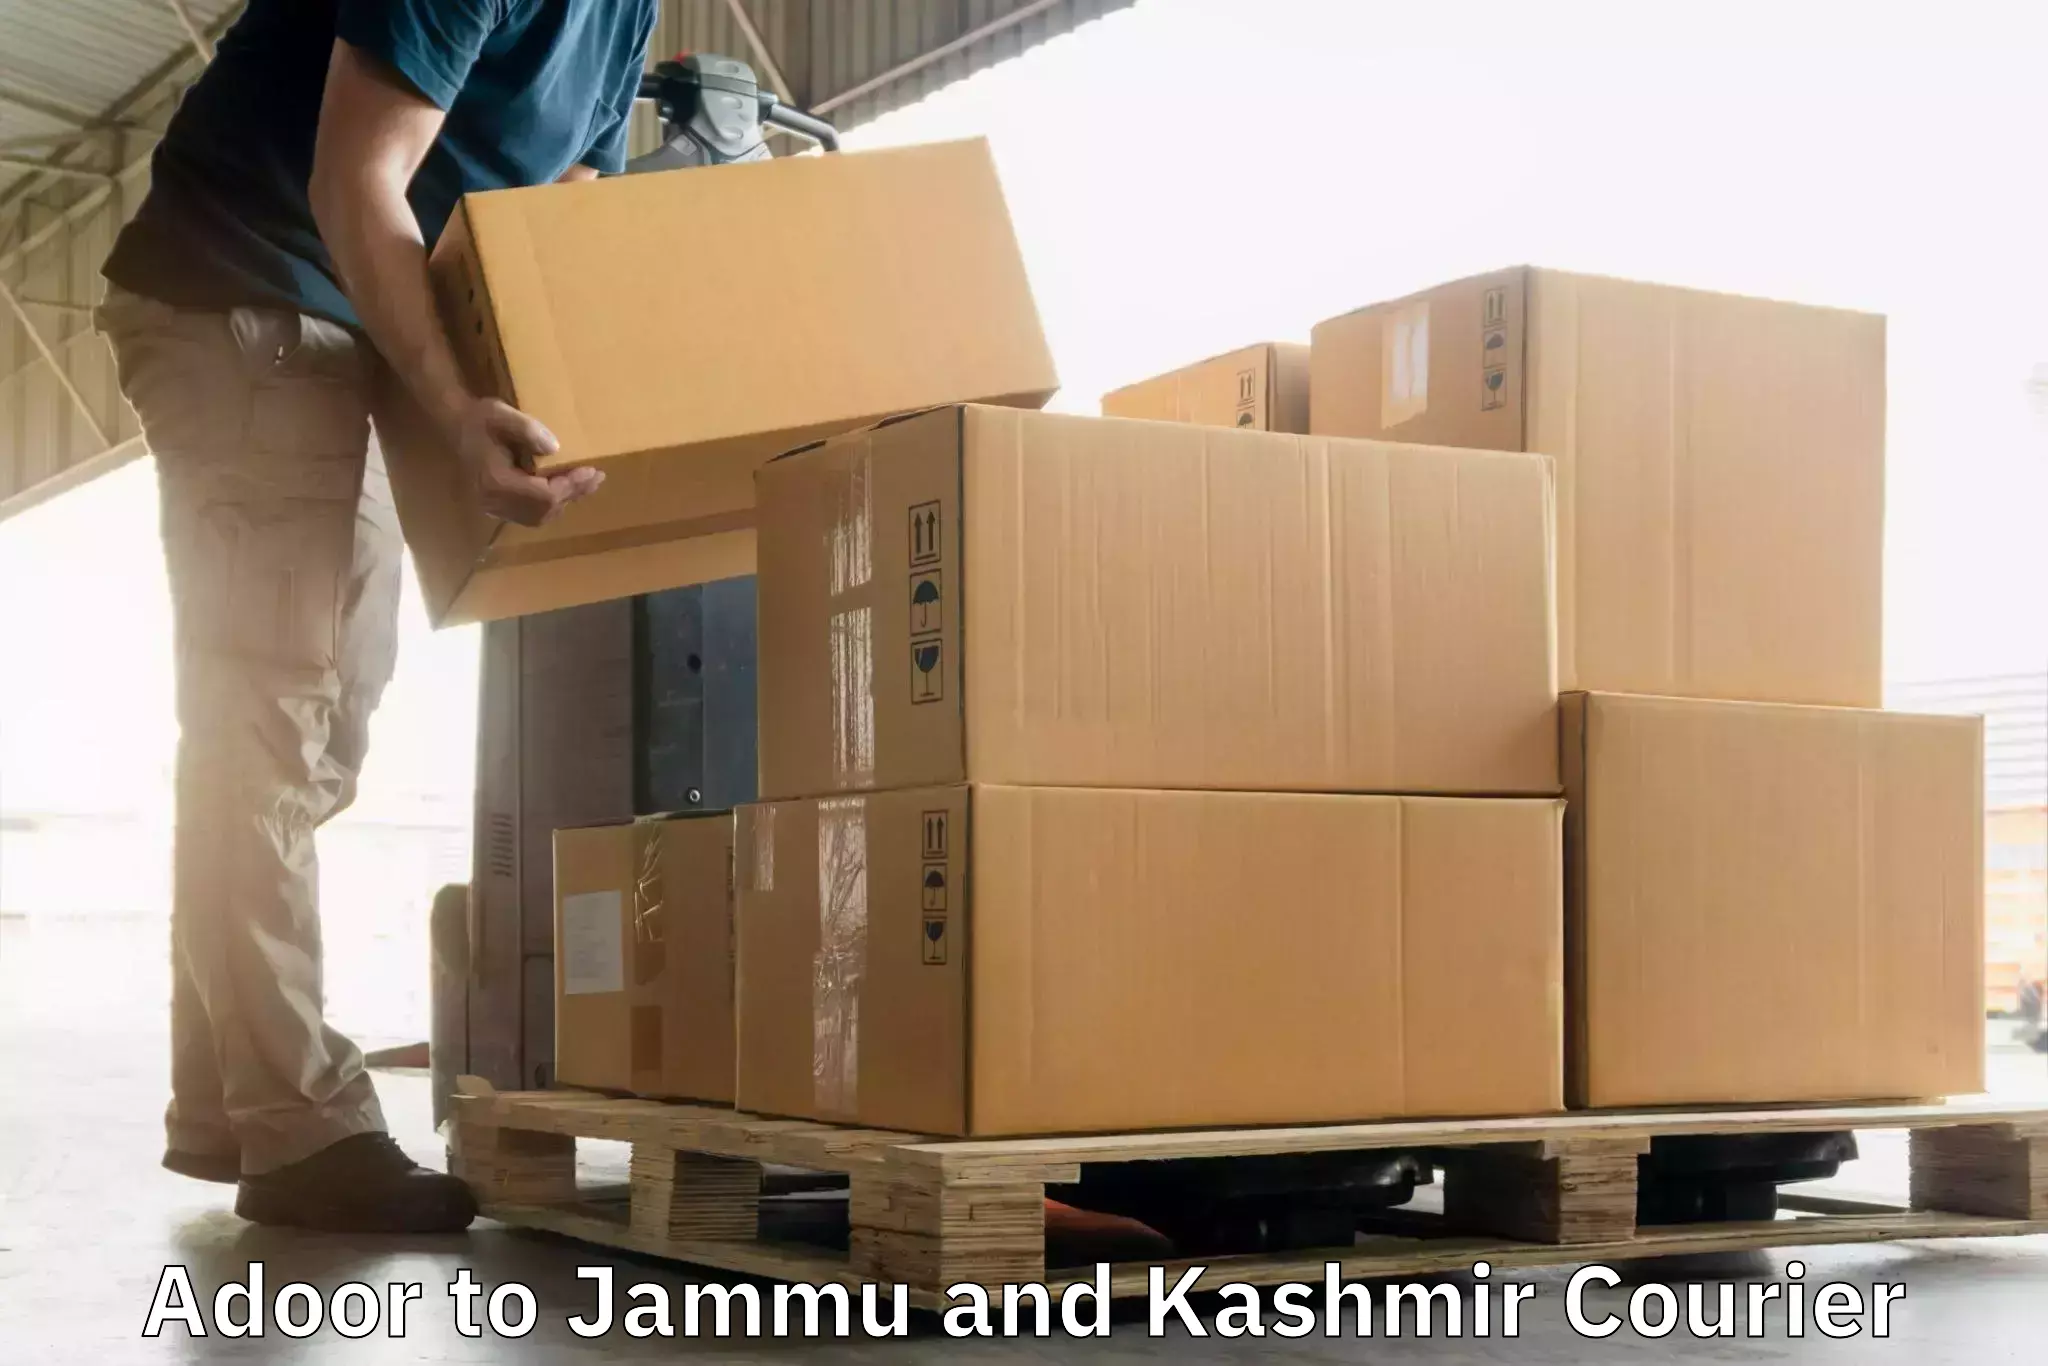 Scheduled delivery Adoor to Srinagar Kashmir